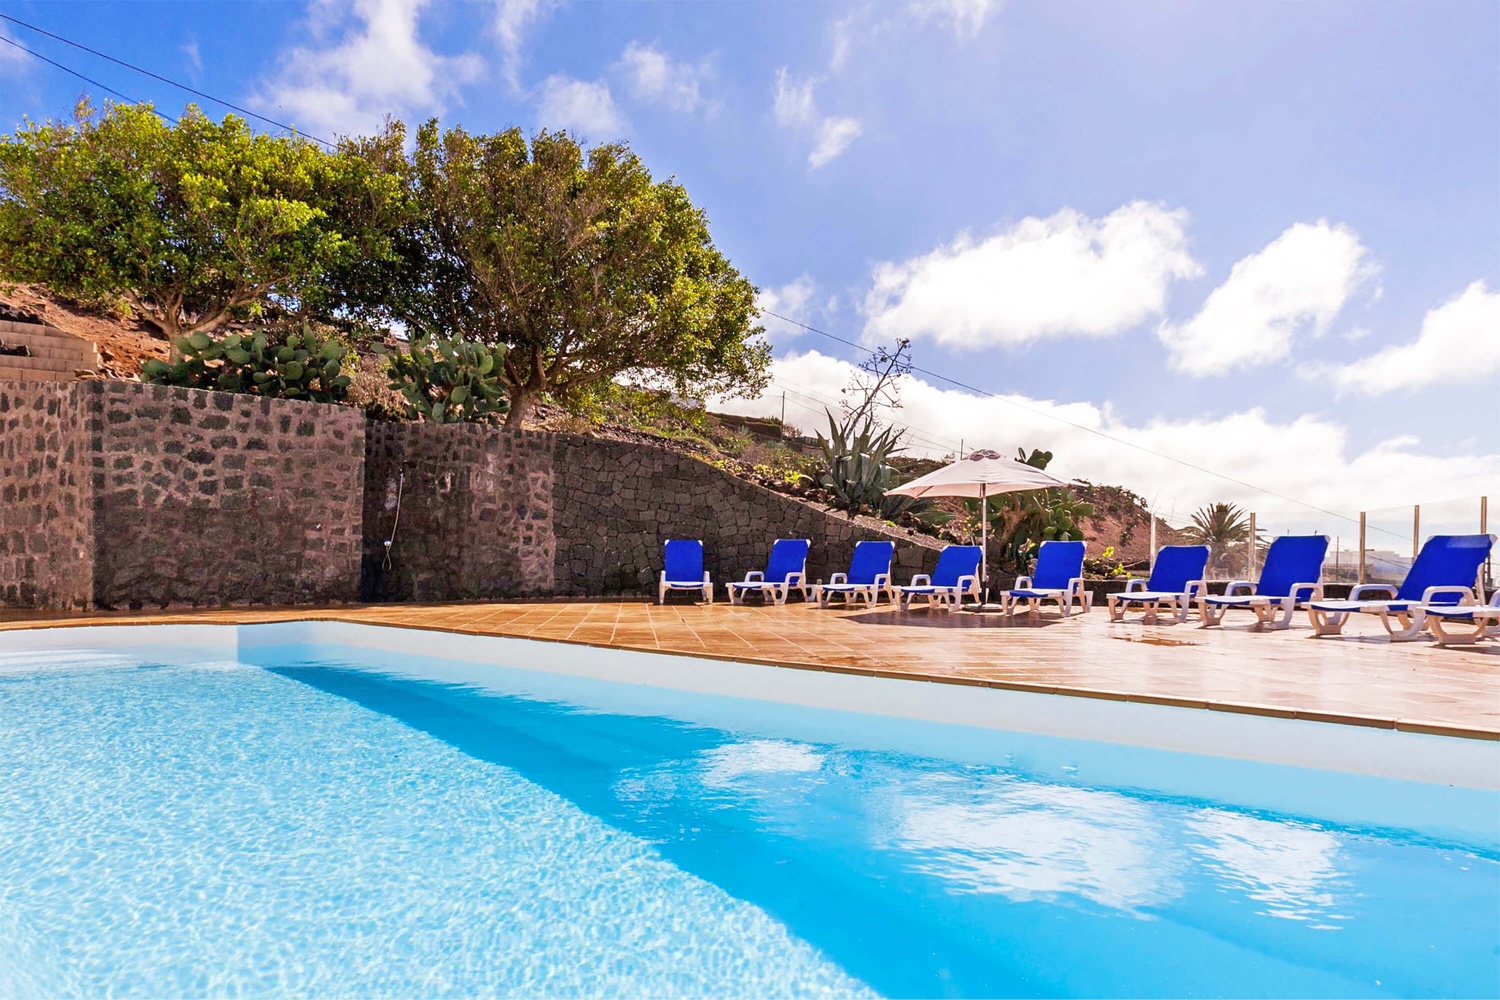 Prostorný šest-ložnice vila s vlastním bazénem a saunou obklopen krásnou vulkanickou krajinou Los Valles